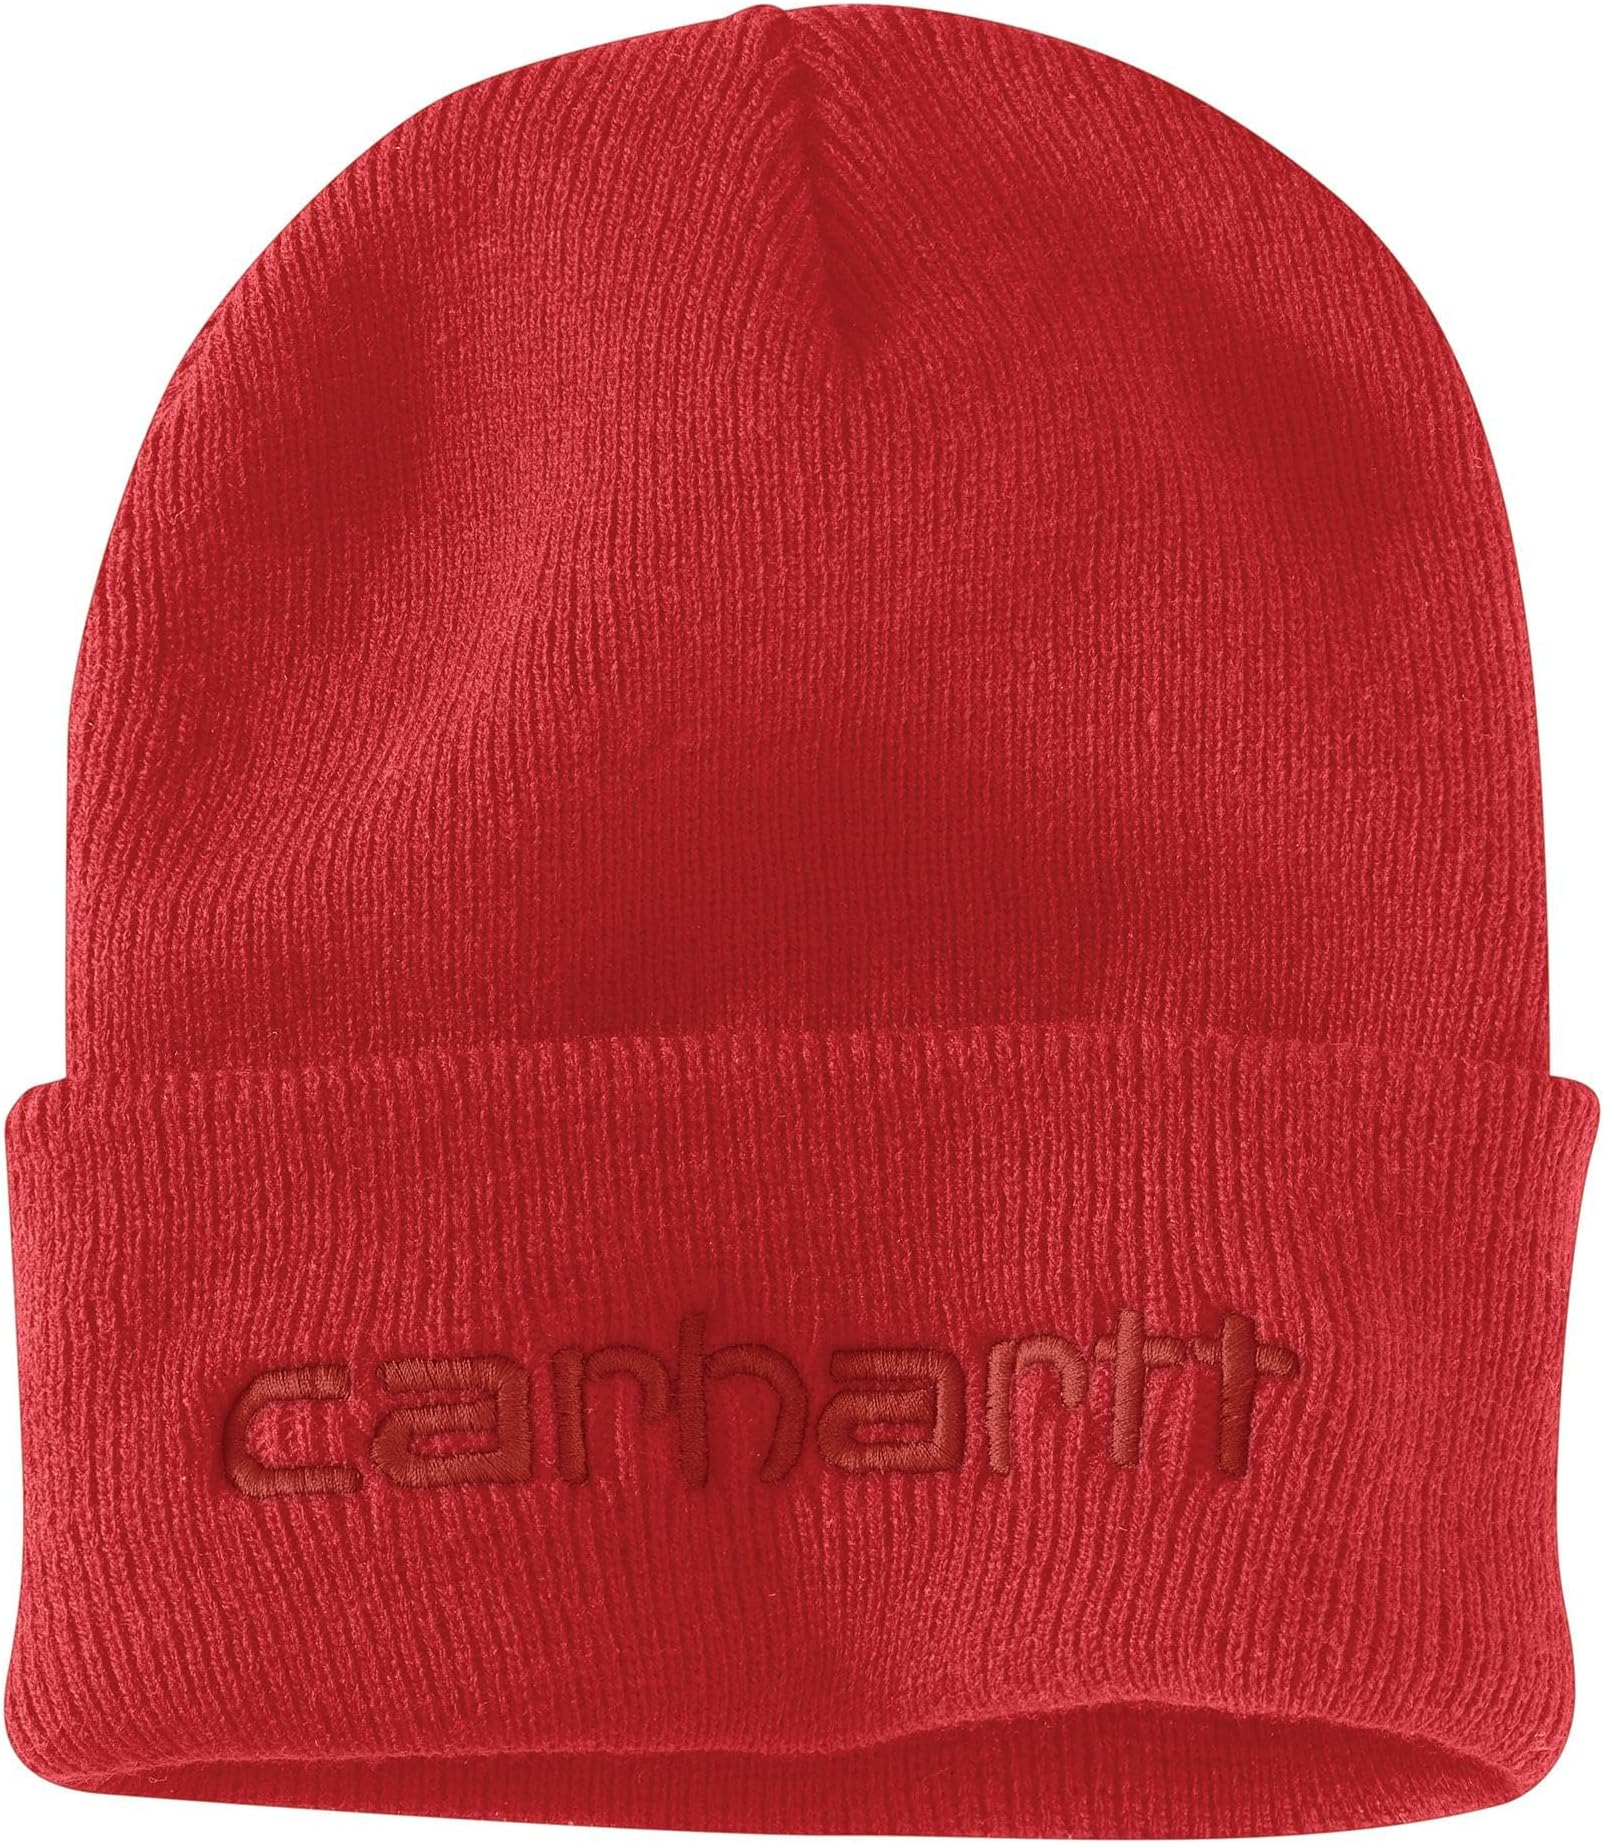 Вязаная утепленная шапка с логотипом и графическим манжетом Carhartt, цвет Red Barn цена и фото